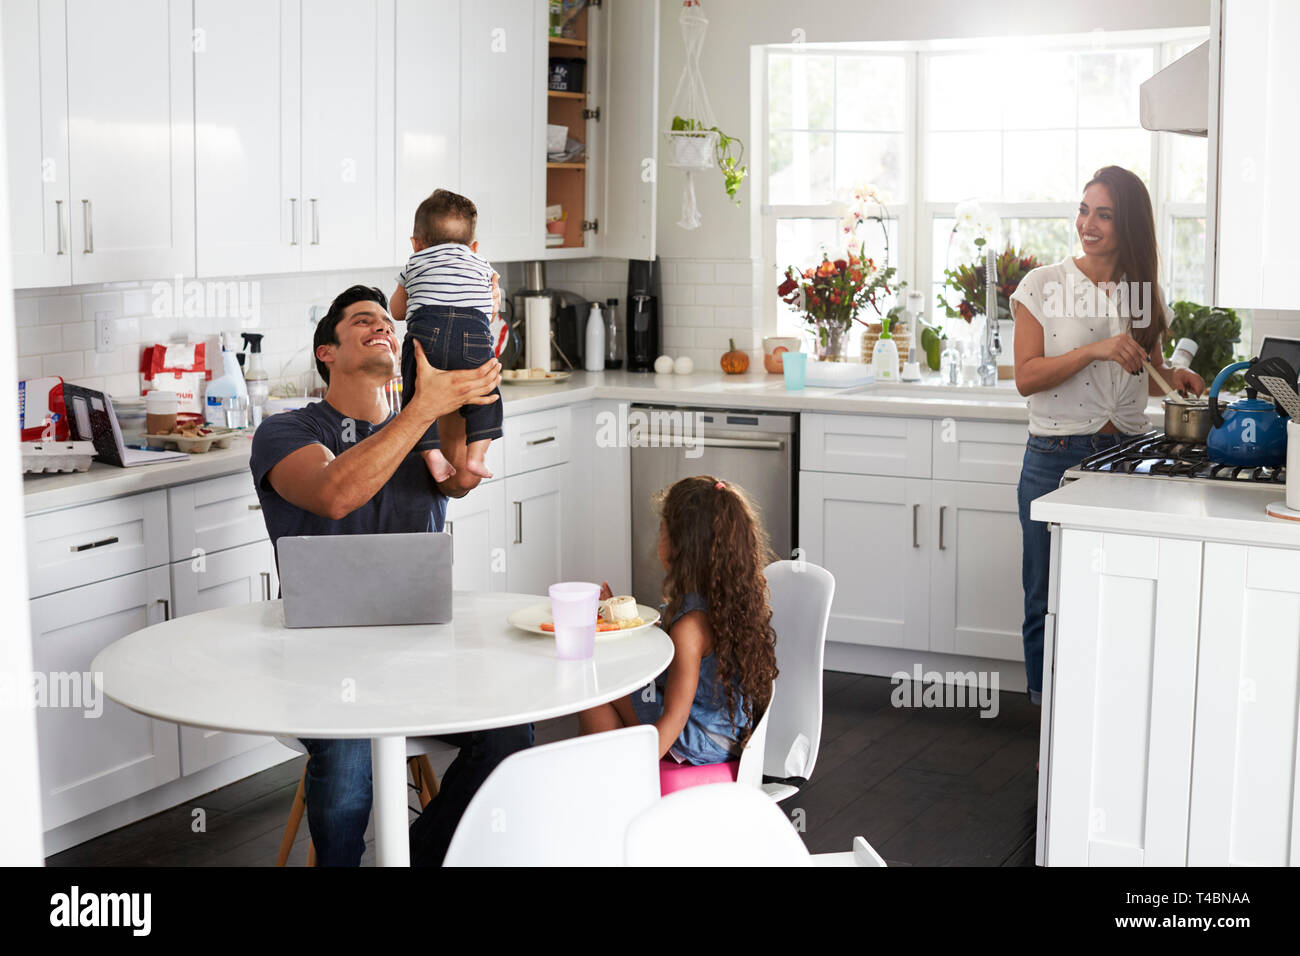 Young Hispanic family dans leur cuisine, papa holding baby dans l'air, maman de la cuisson à la cuisson Banque D'Images